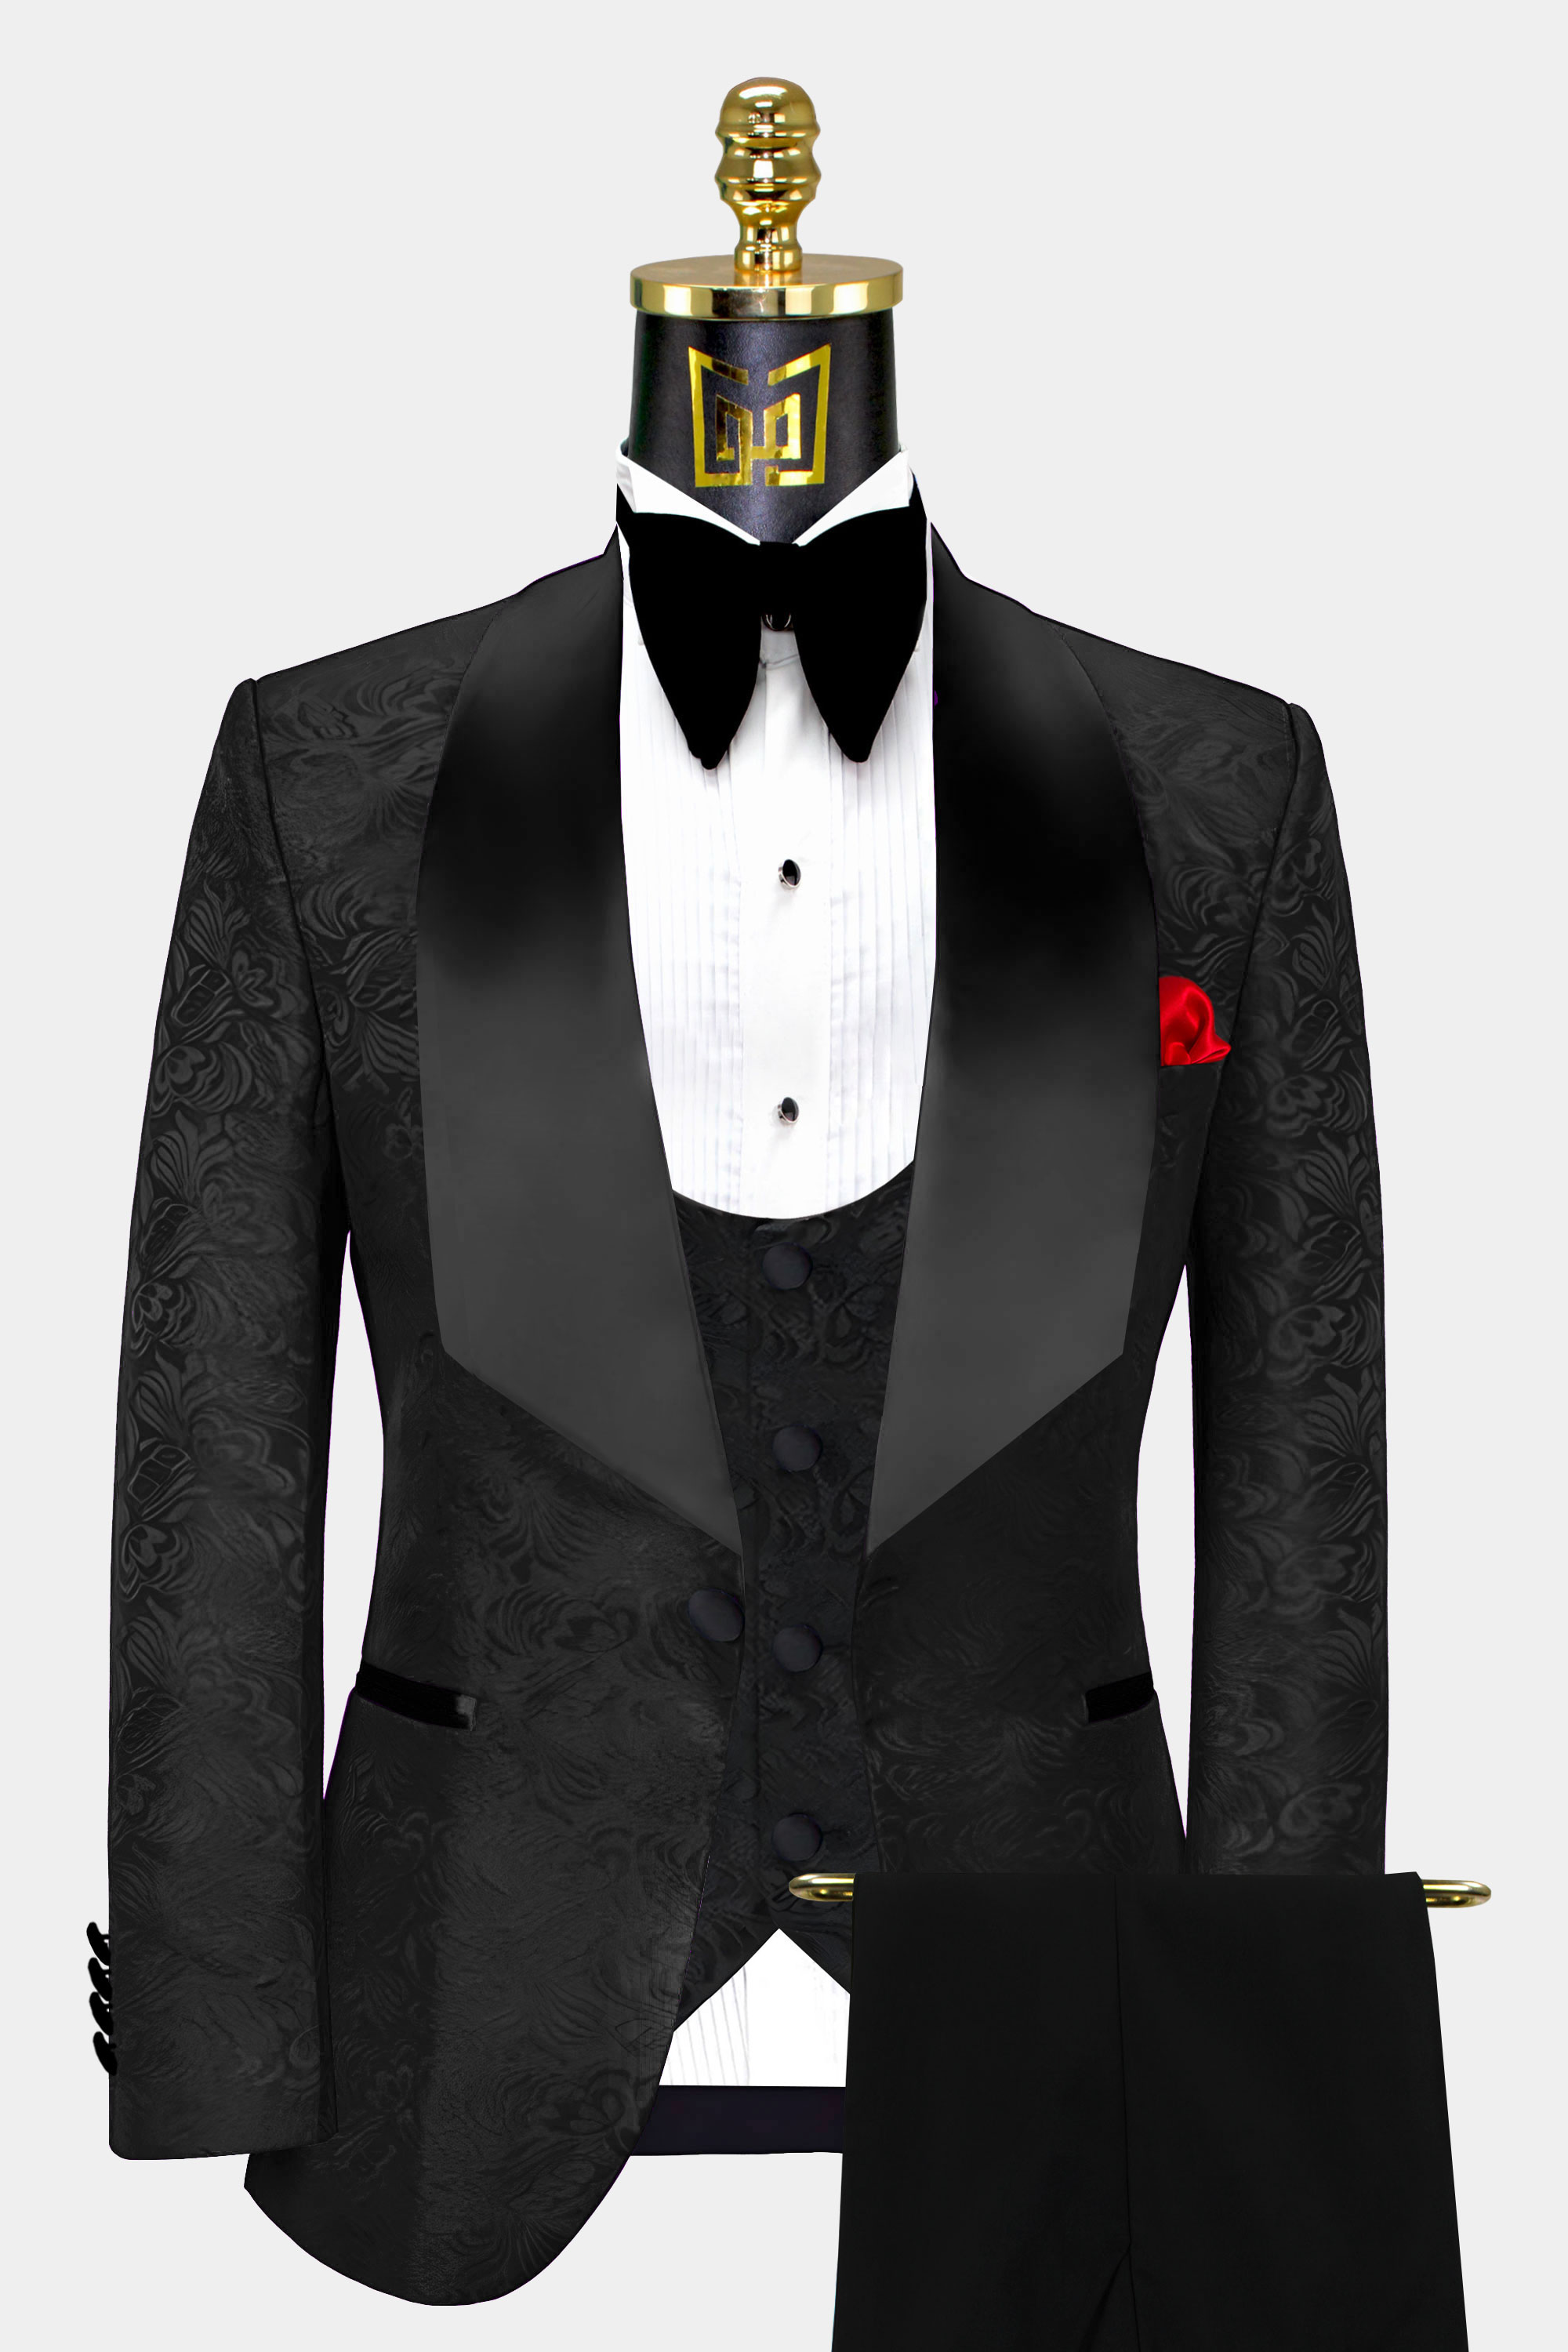 Solid Black Dress Vest, Formal Mens Suit and Tuxedo Vest in Black Satin